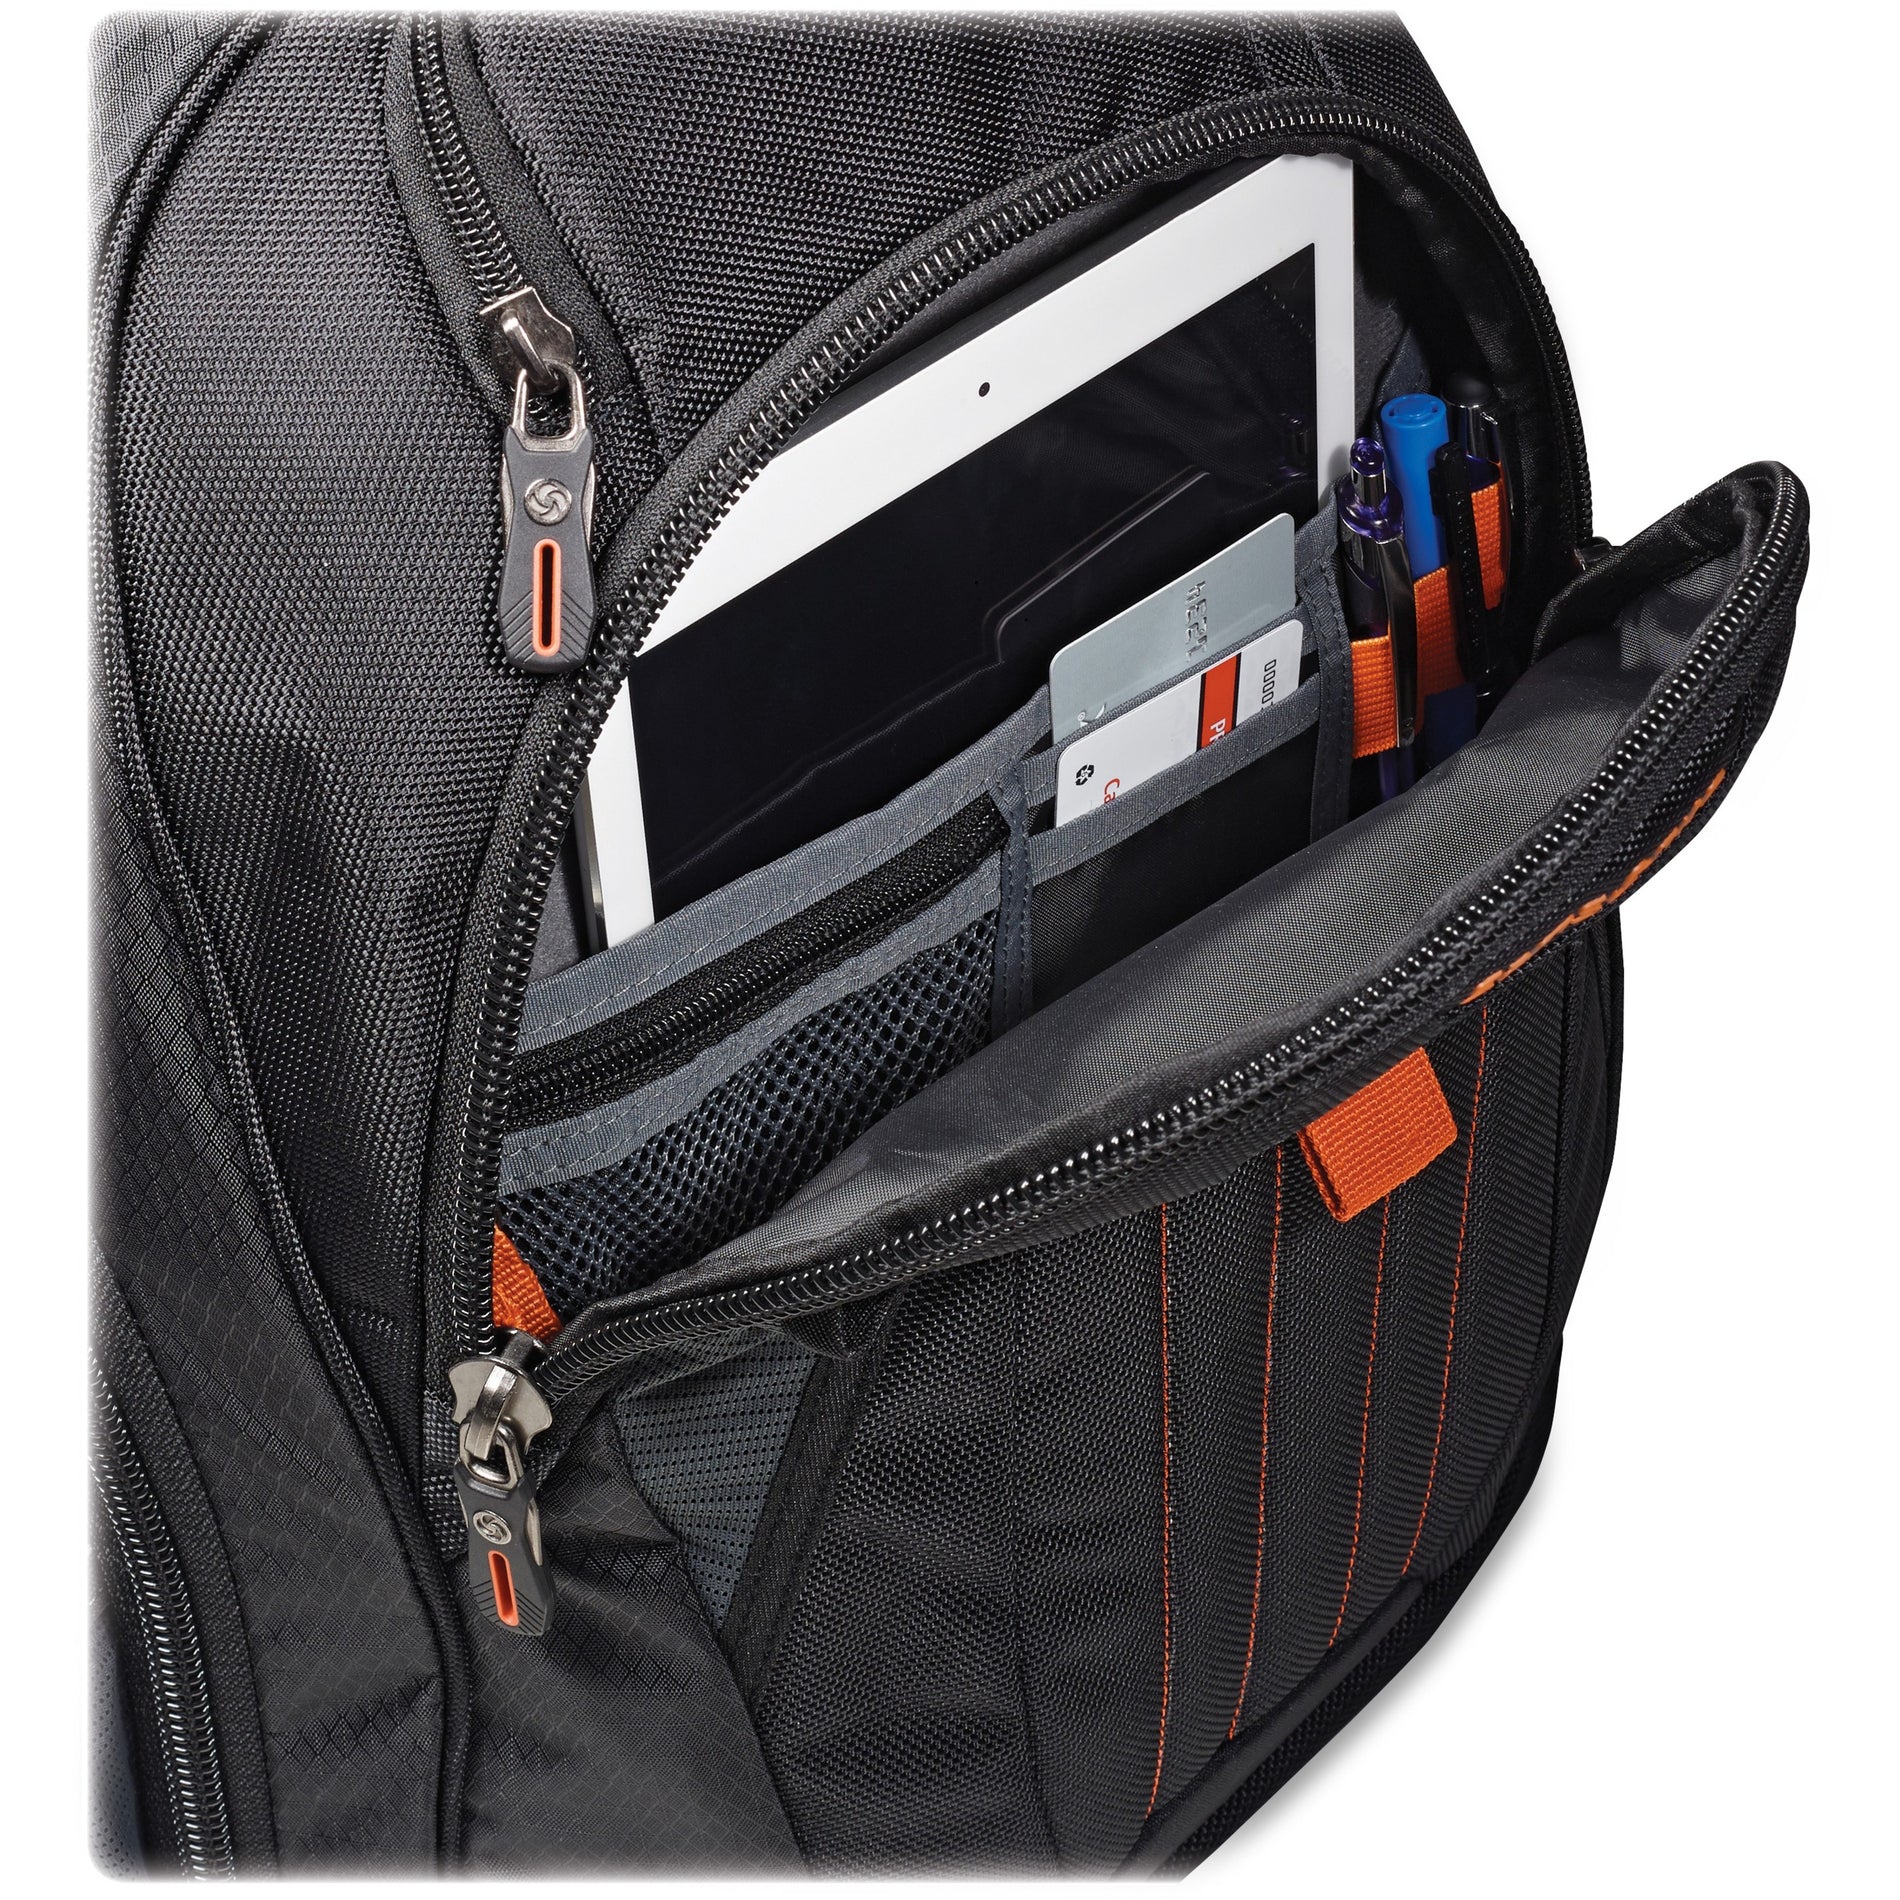 Samsonite 66303-1070 Tectonic 2 Large Backpack, 8-1/2"x13-1/2", Black - Padded Laptop Compartment, Tablet Pocket, Bottle Pocket